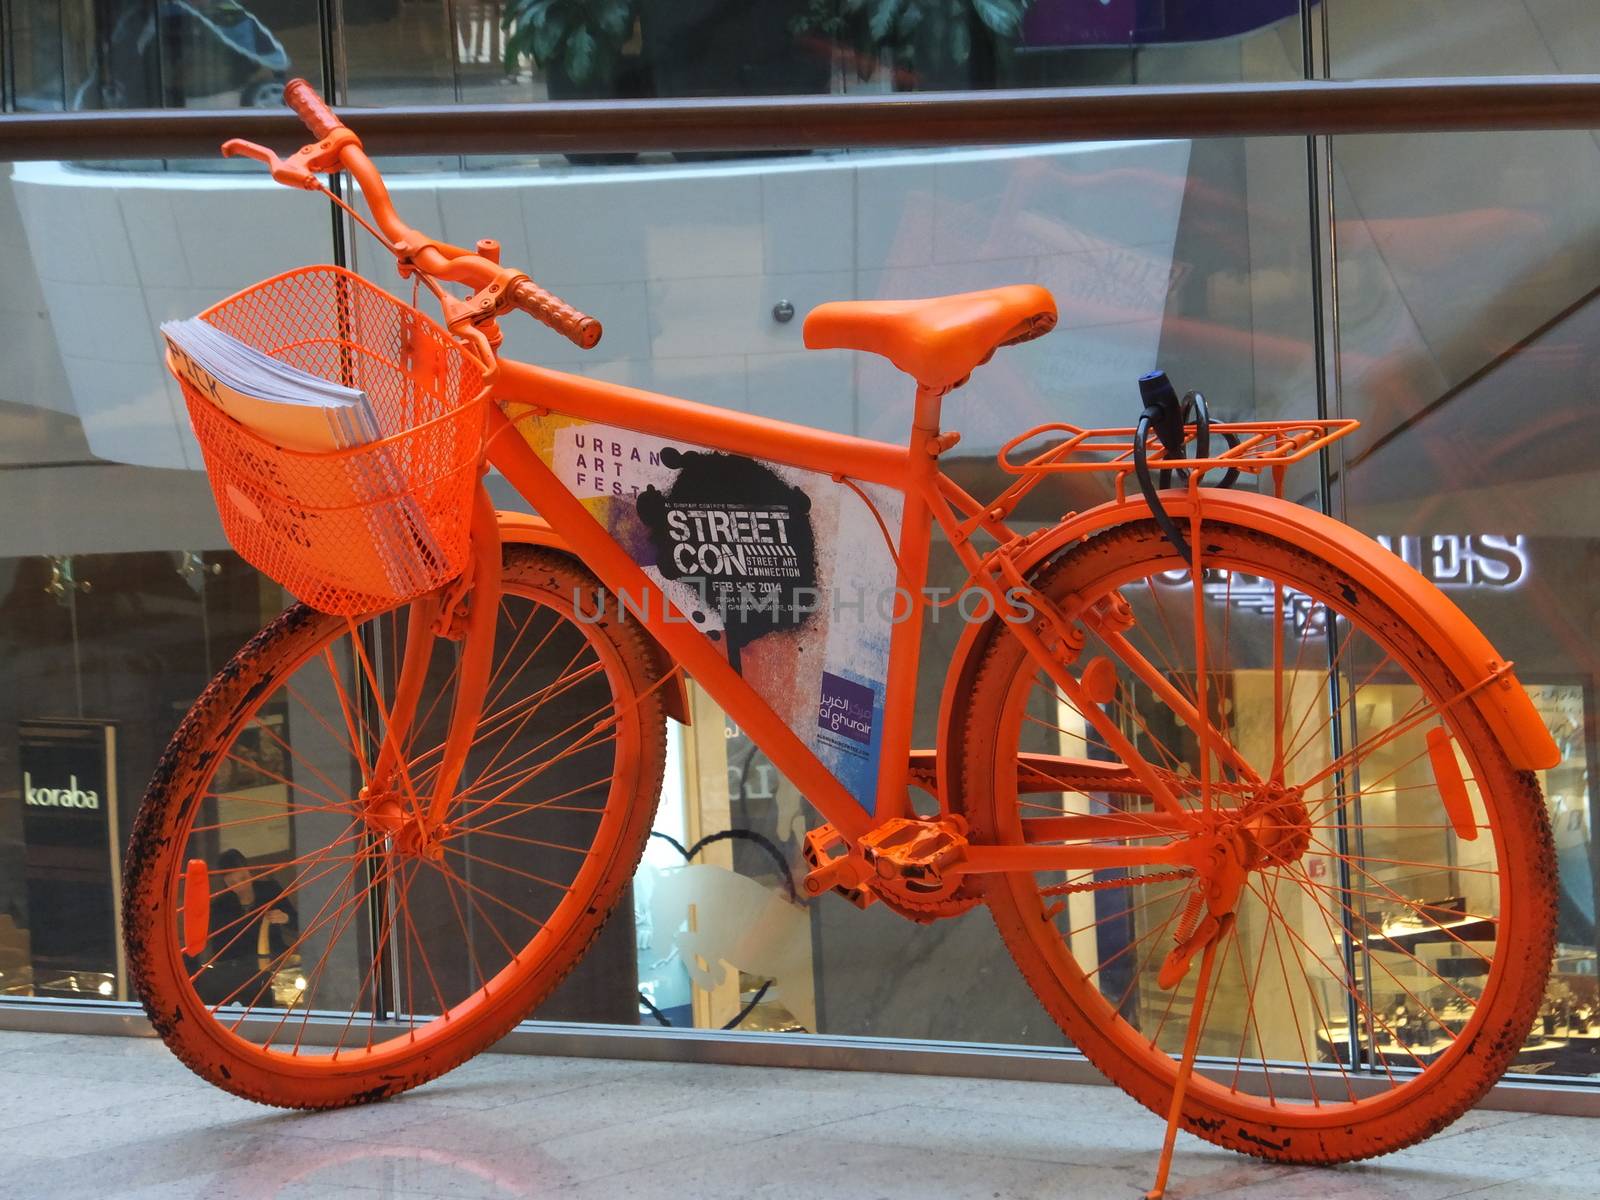 Bicycle exhibit at the Street Con urban art festival at Al Ghurair Centre in Dubai, UAE by sainaniritu